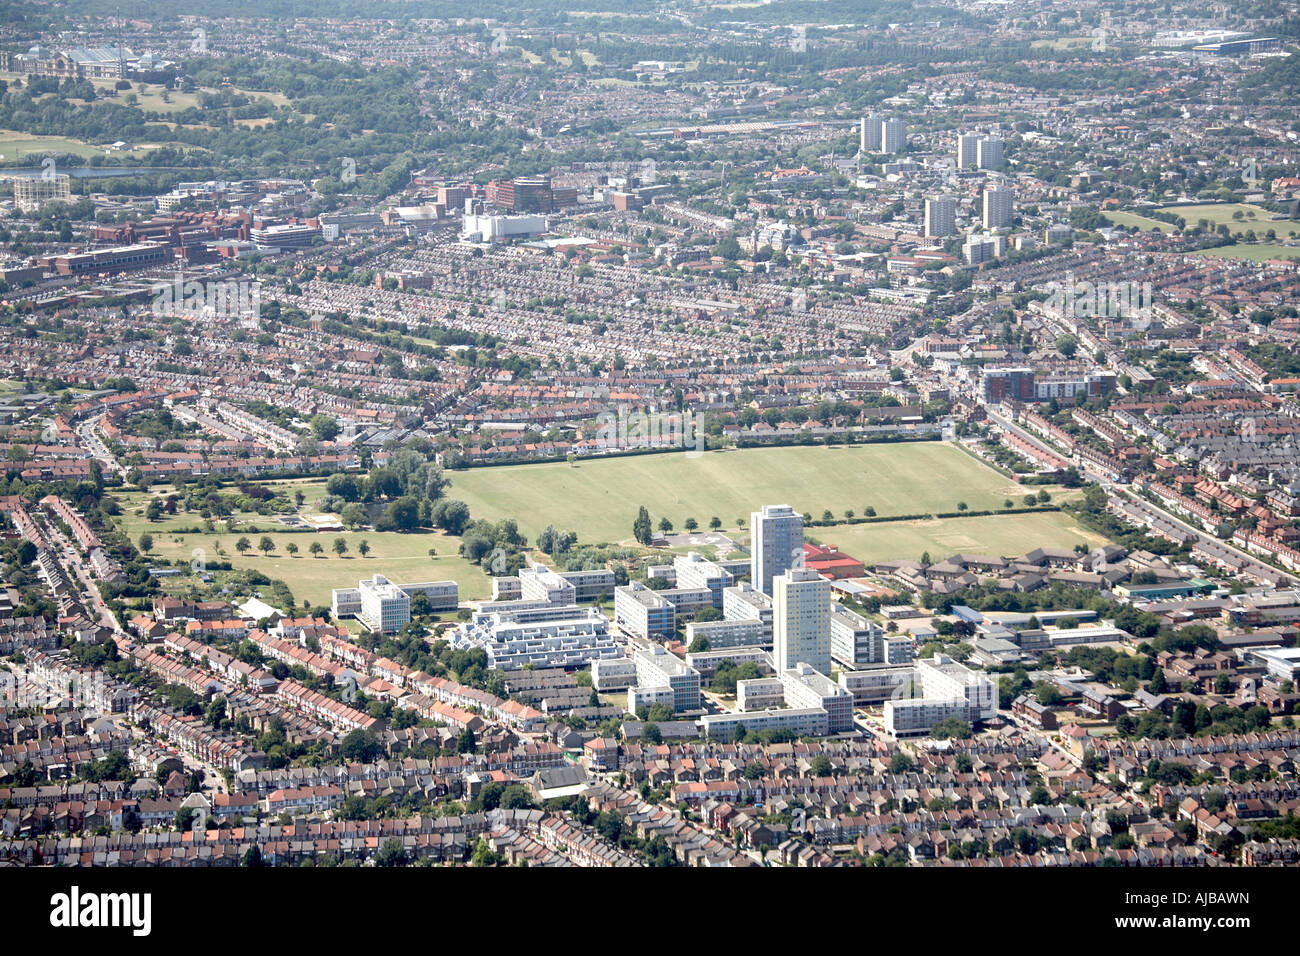 Vista aérea al oeste del Señorío de recreo suburbana de tierra vivienda y Alexandra Palace Haringey London N17 Inglaterra alto nivel Foto de stock